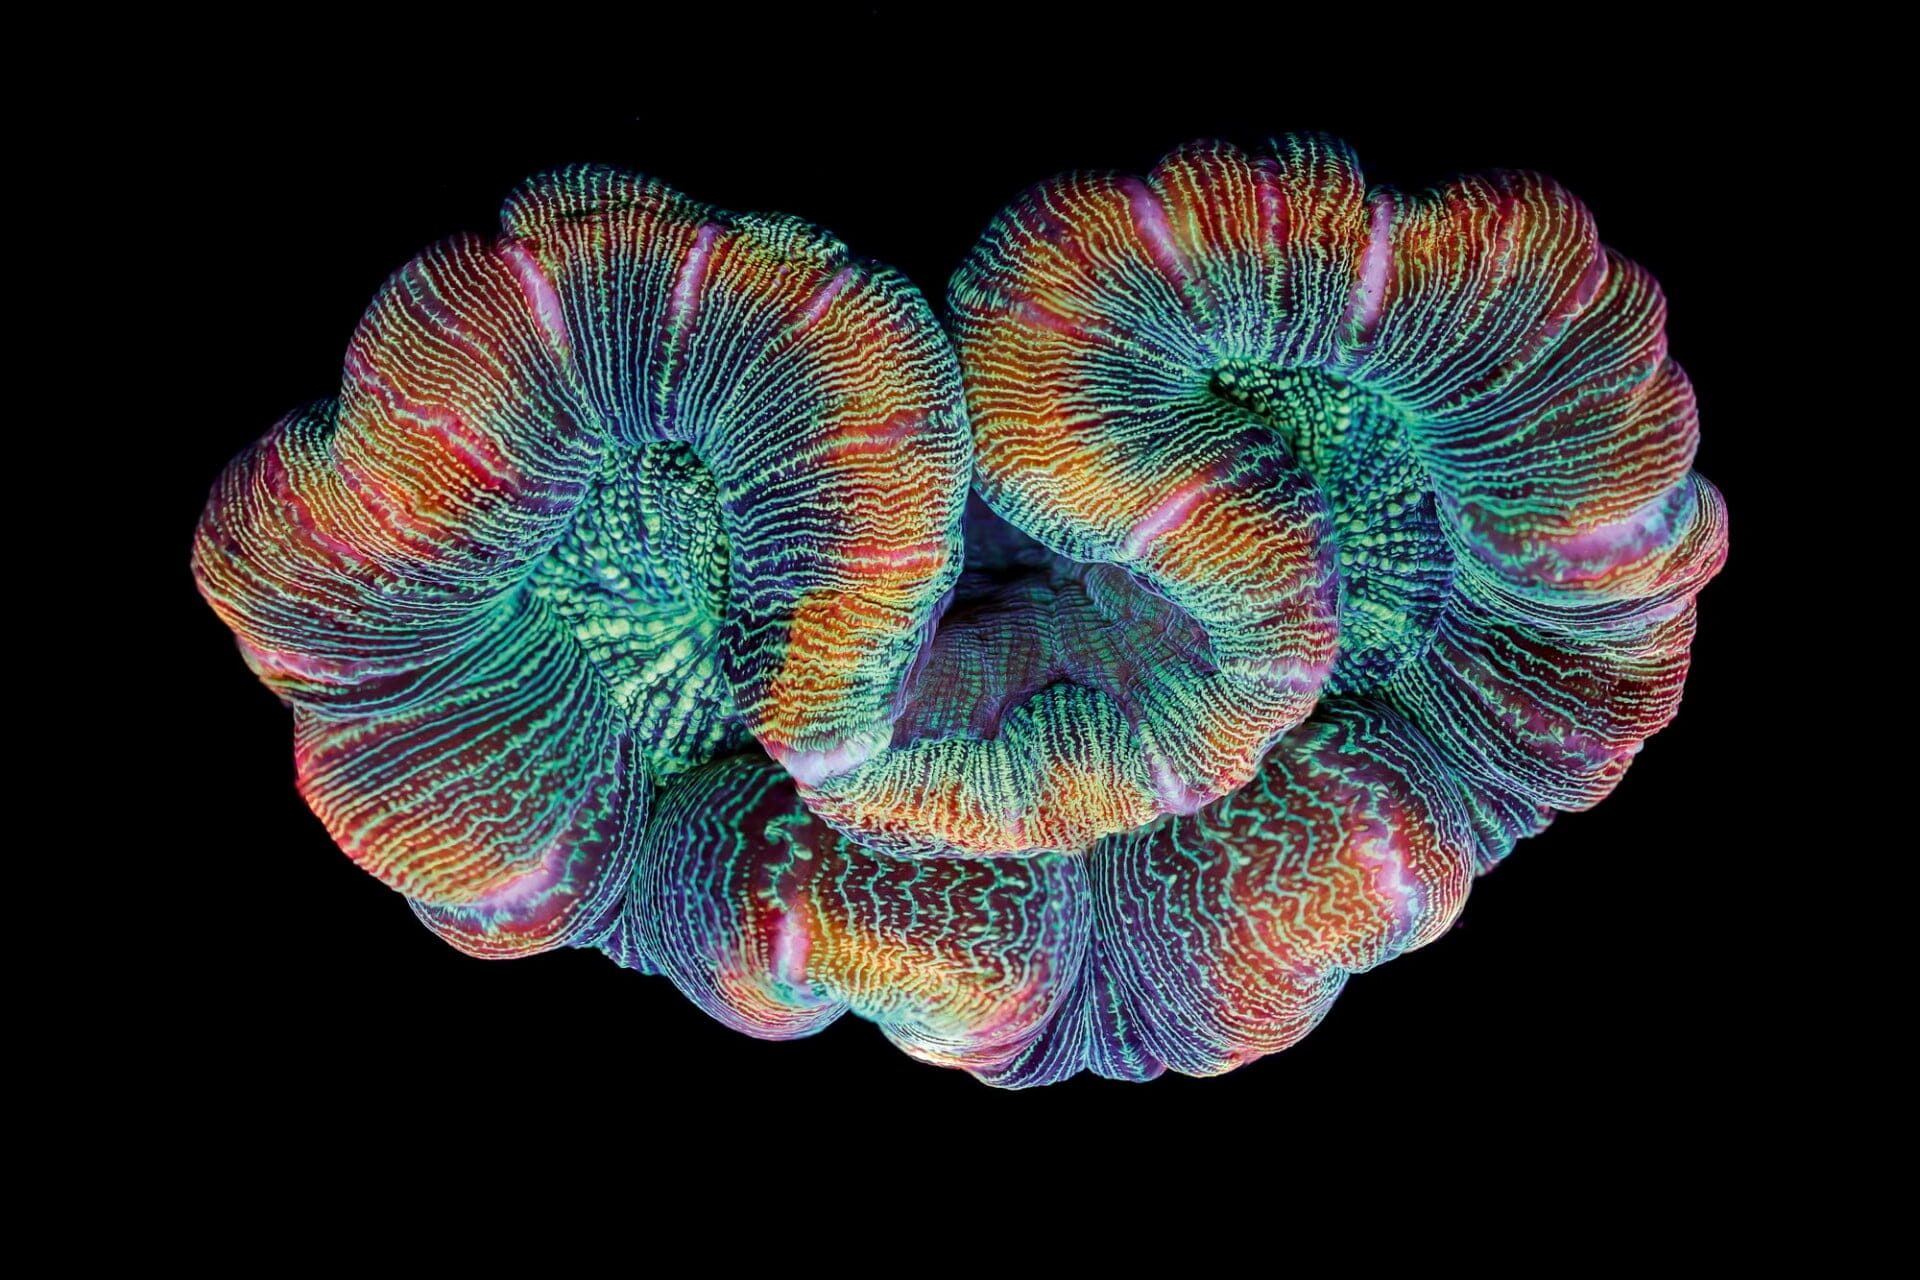 NNtonio Rod (Antonio Rodríguez Canto), Trachyphyllia, from Coral Colors, (2016). Image © NNtonio Rod